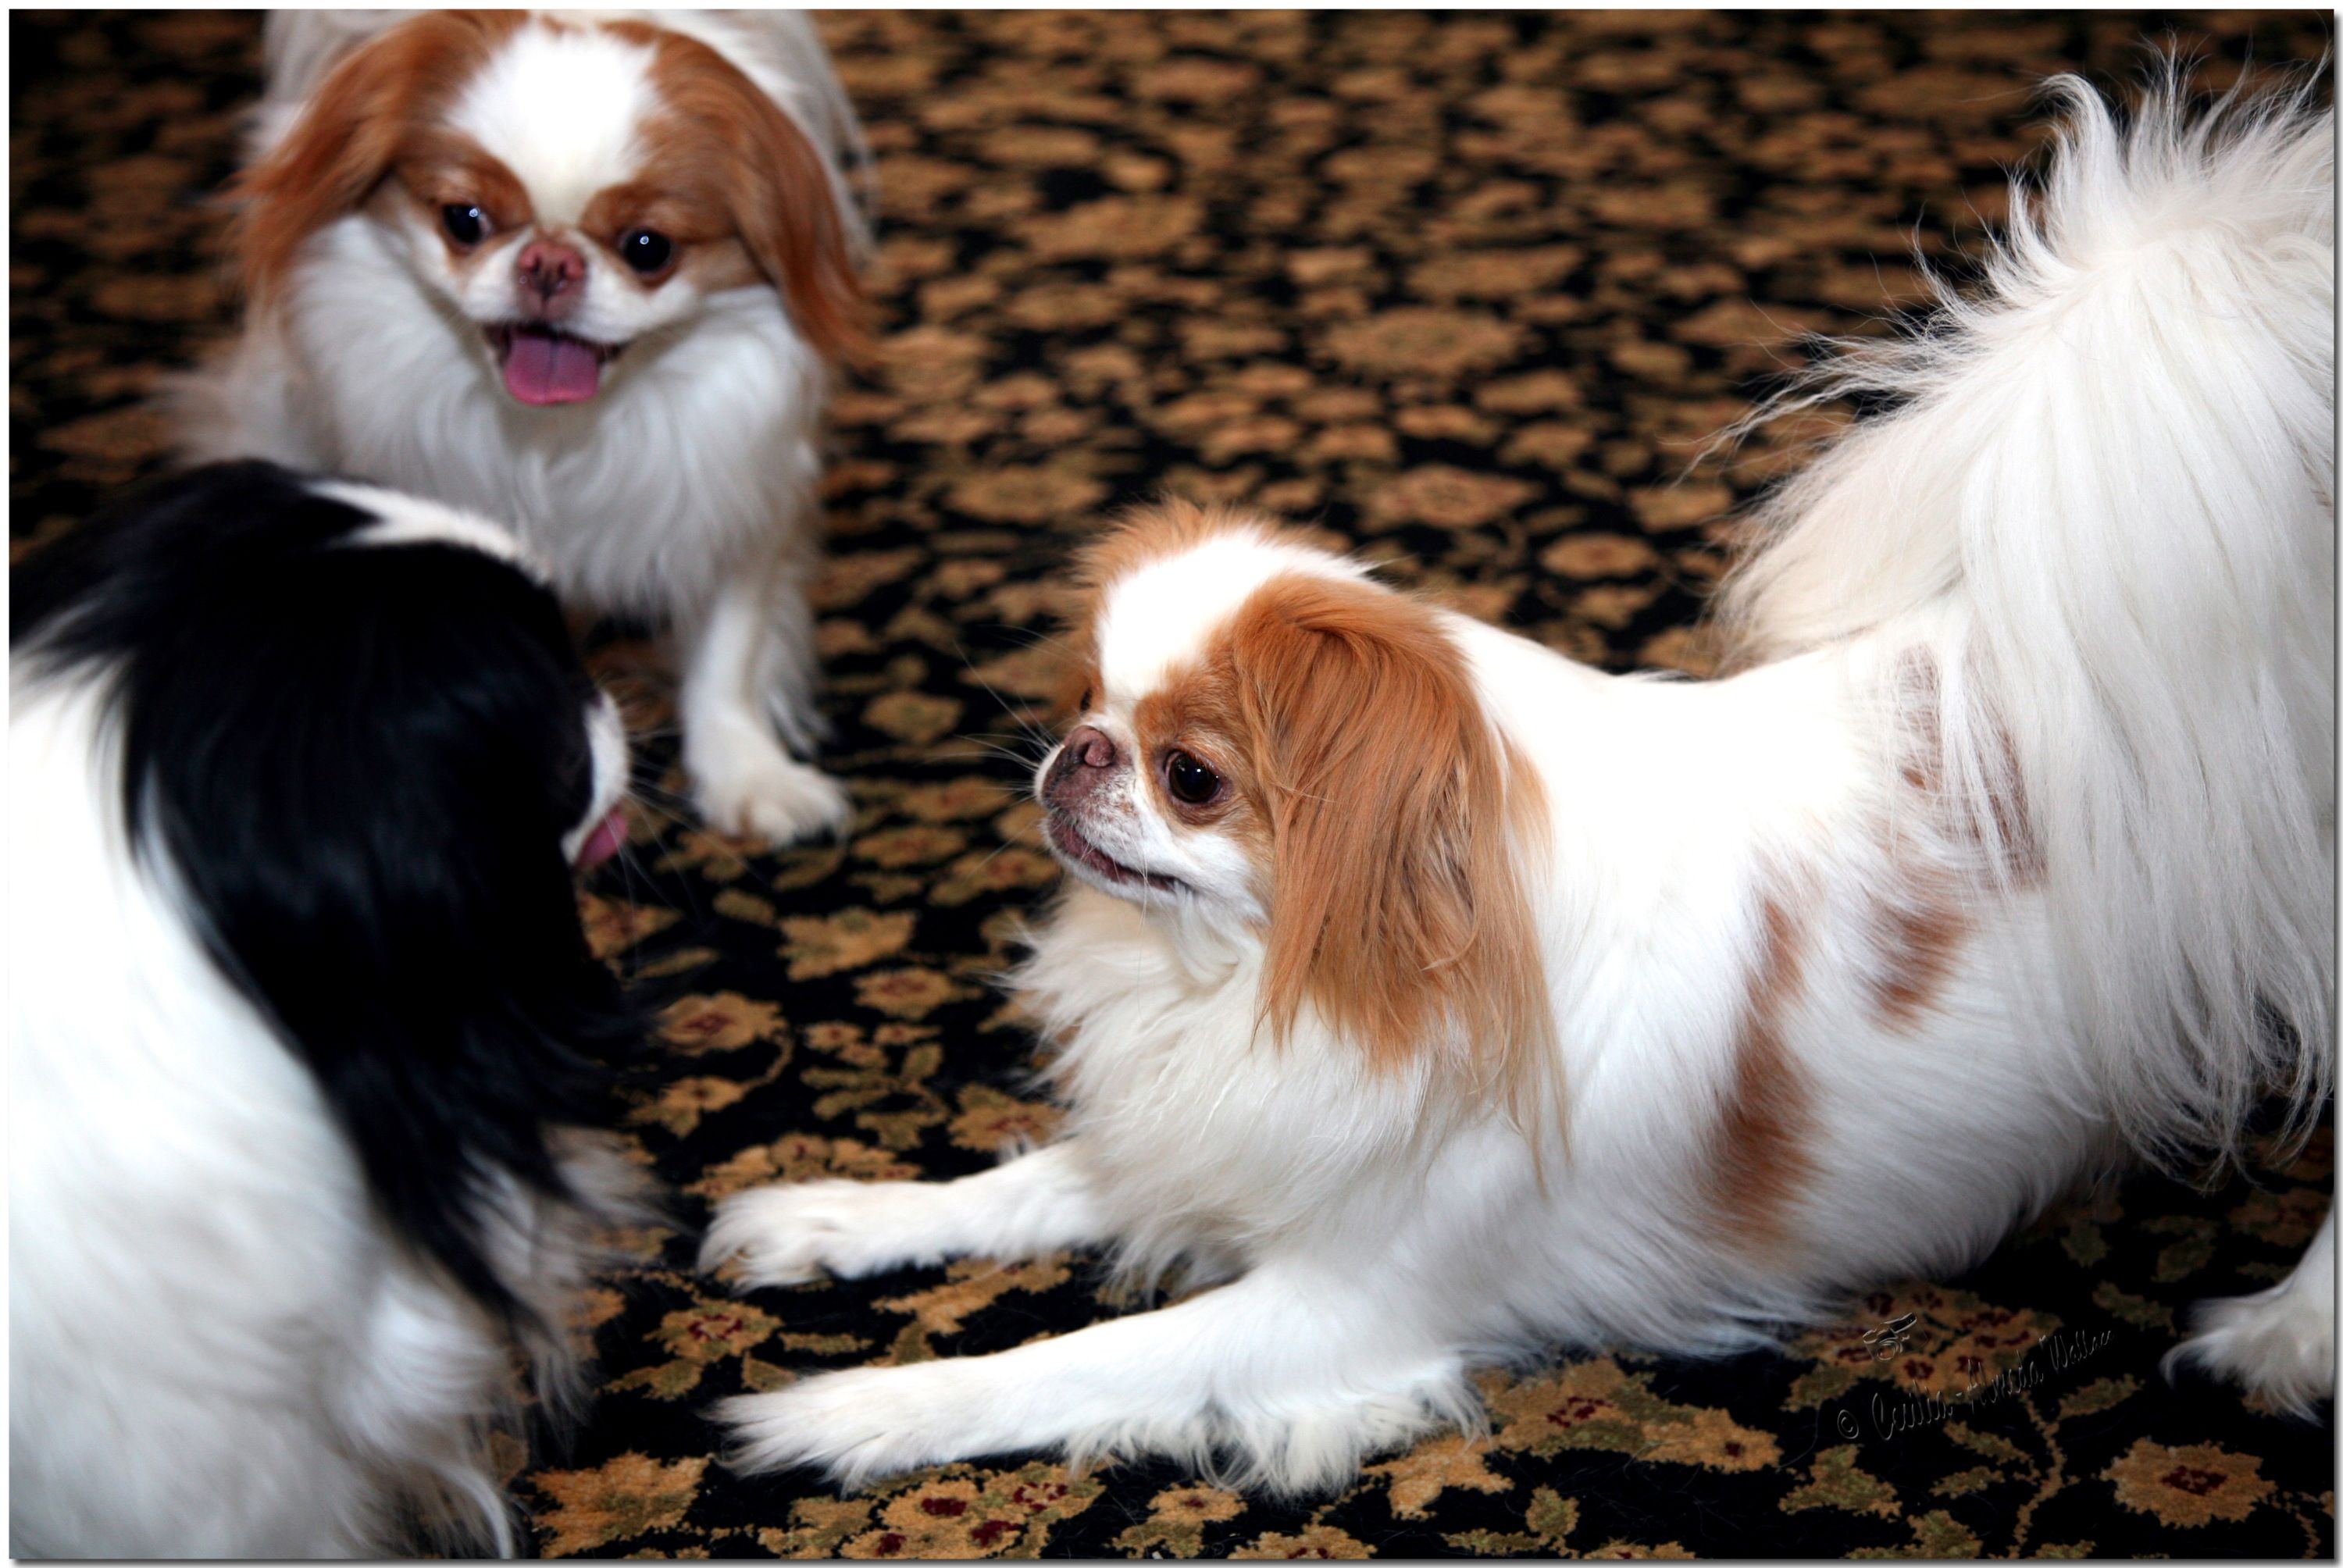 Японский хин: описание породы с фото, характер собаки, стандарты и отзывы владельцев